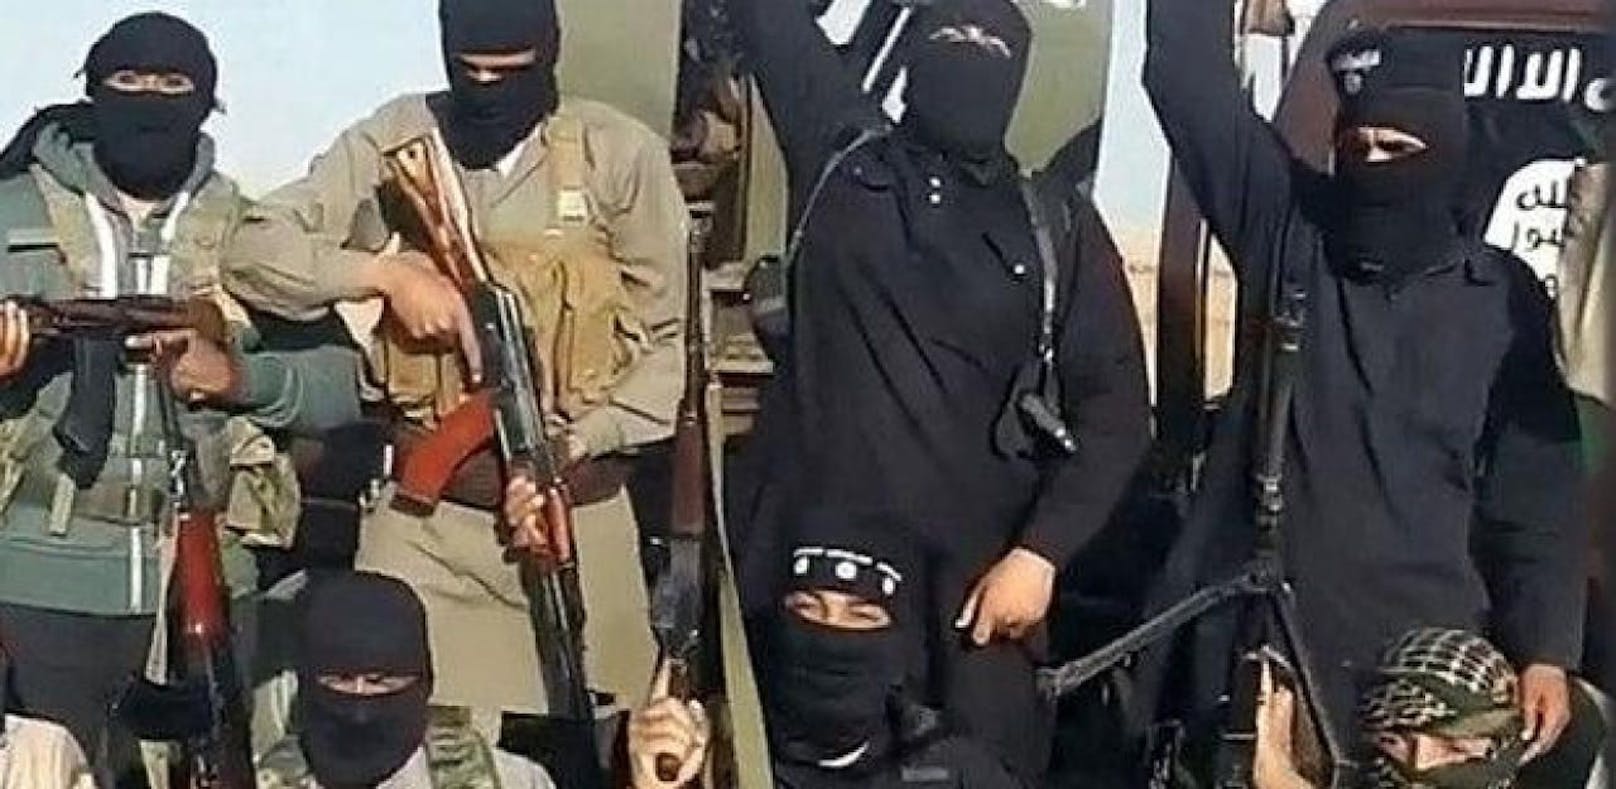 Die IS hat in Ostsyrien 33 Menschen enthauptet